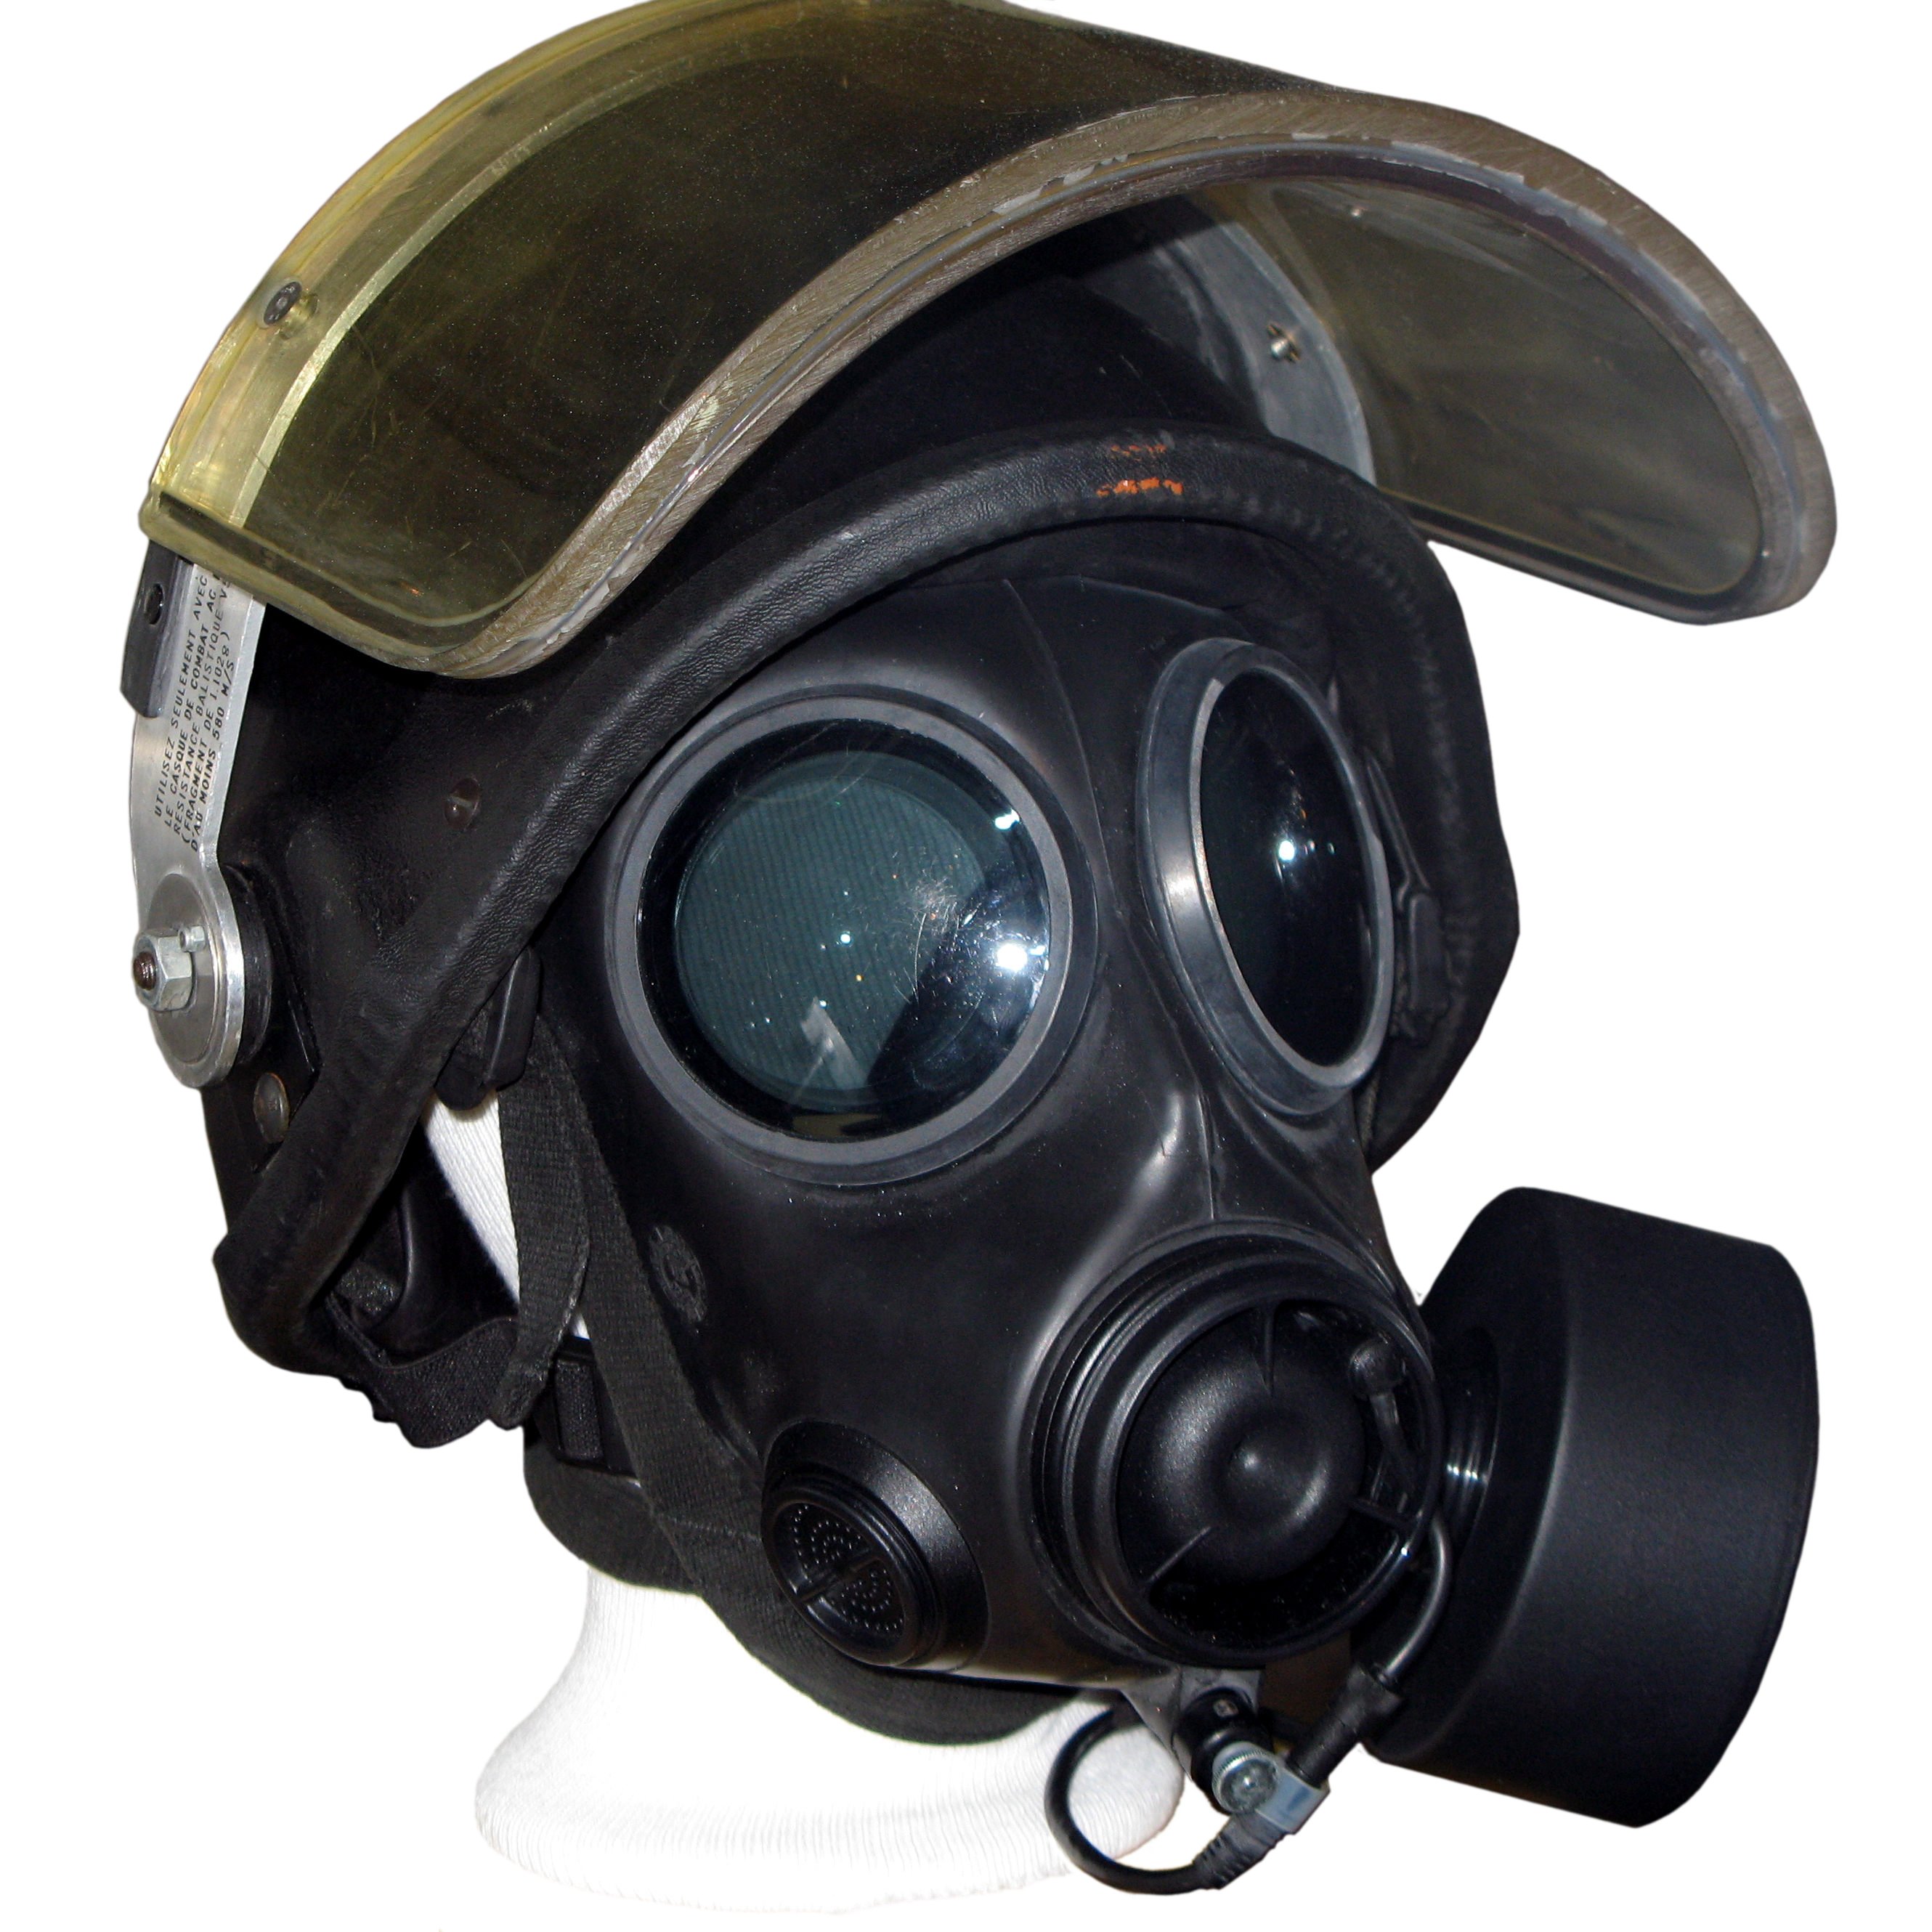 File Gas Mask Img 1619 jpg Wikipedia